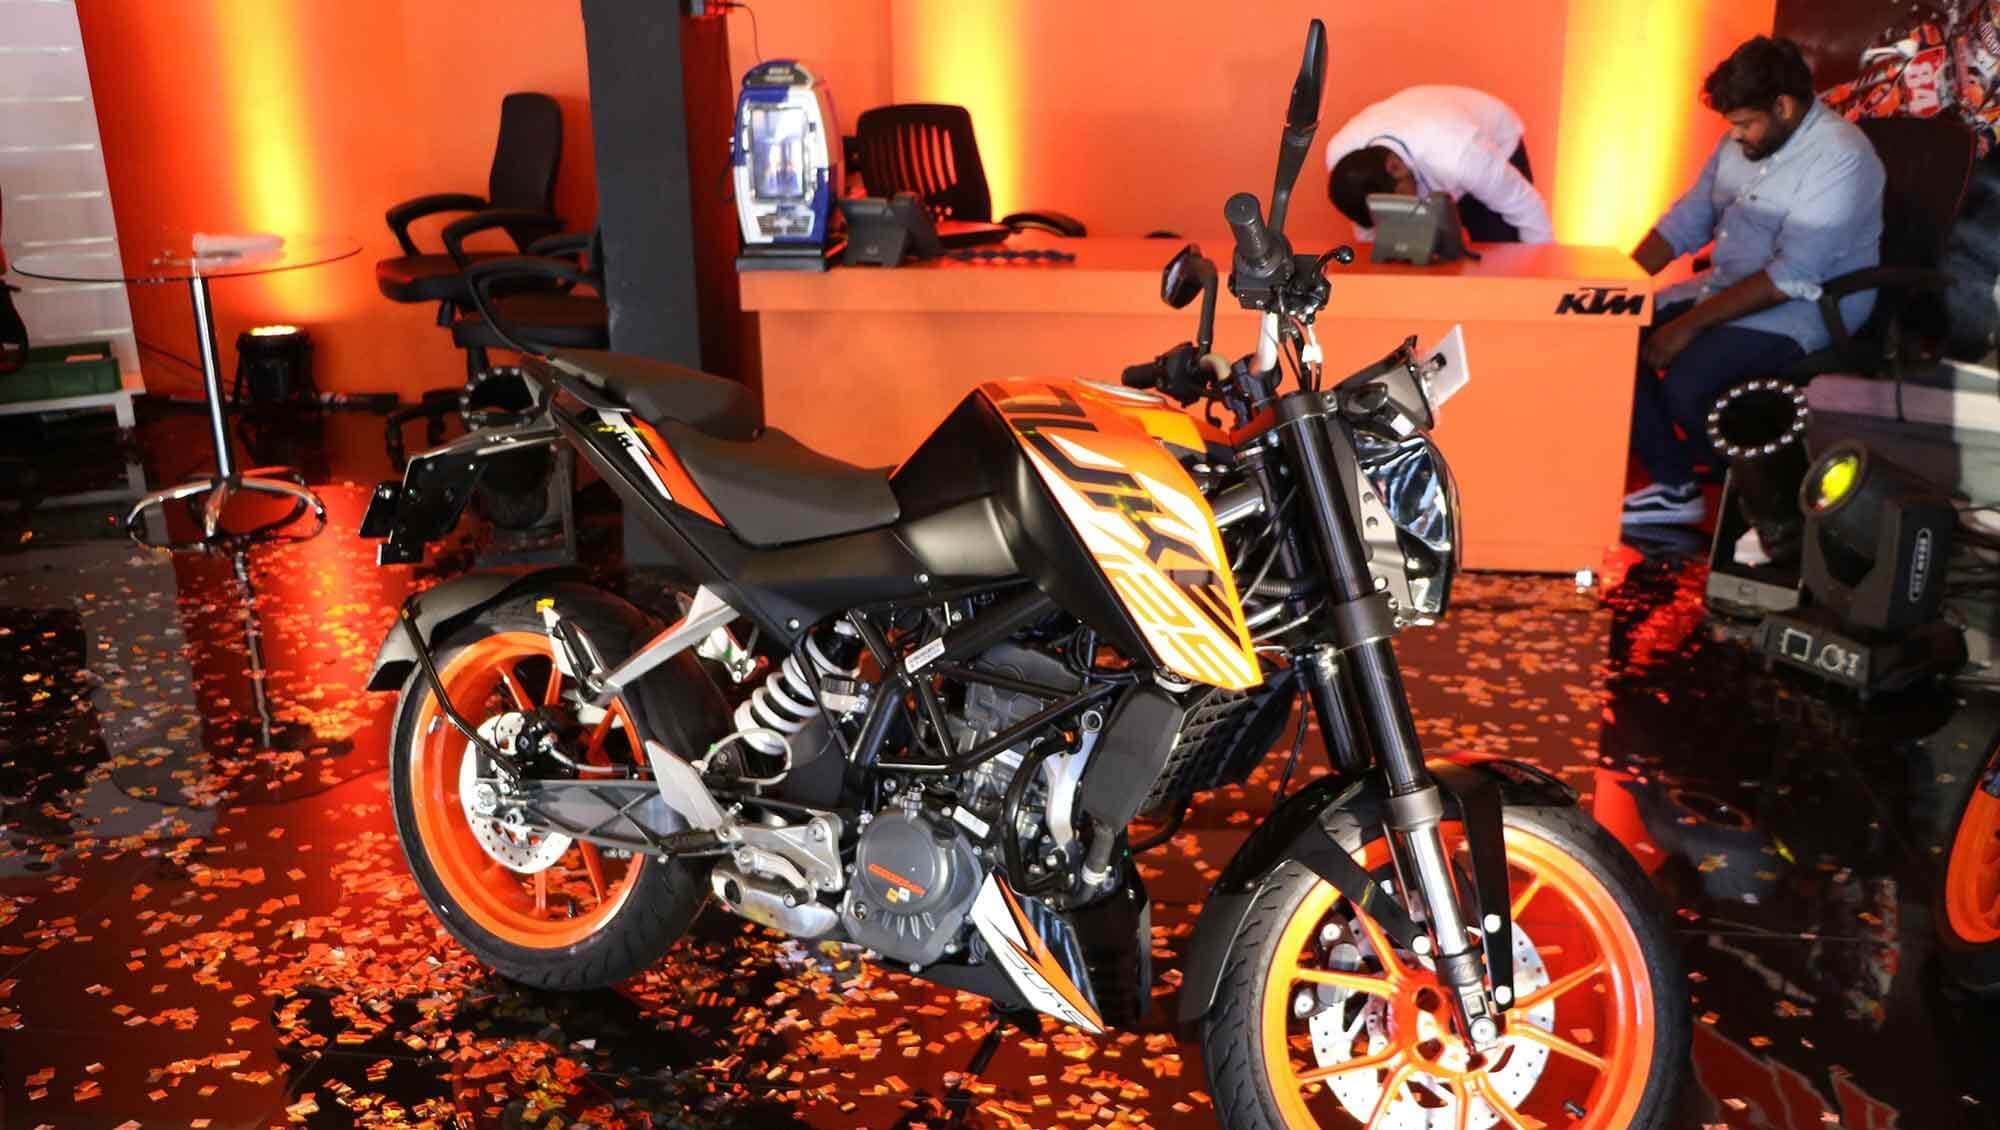 Eine Showcase-Veranstaltung zur Markteinführung eines neuen Motorrads.